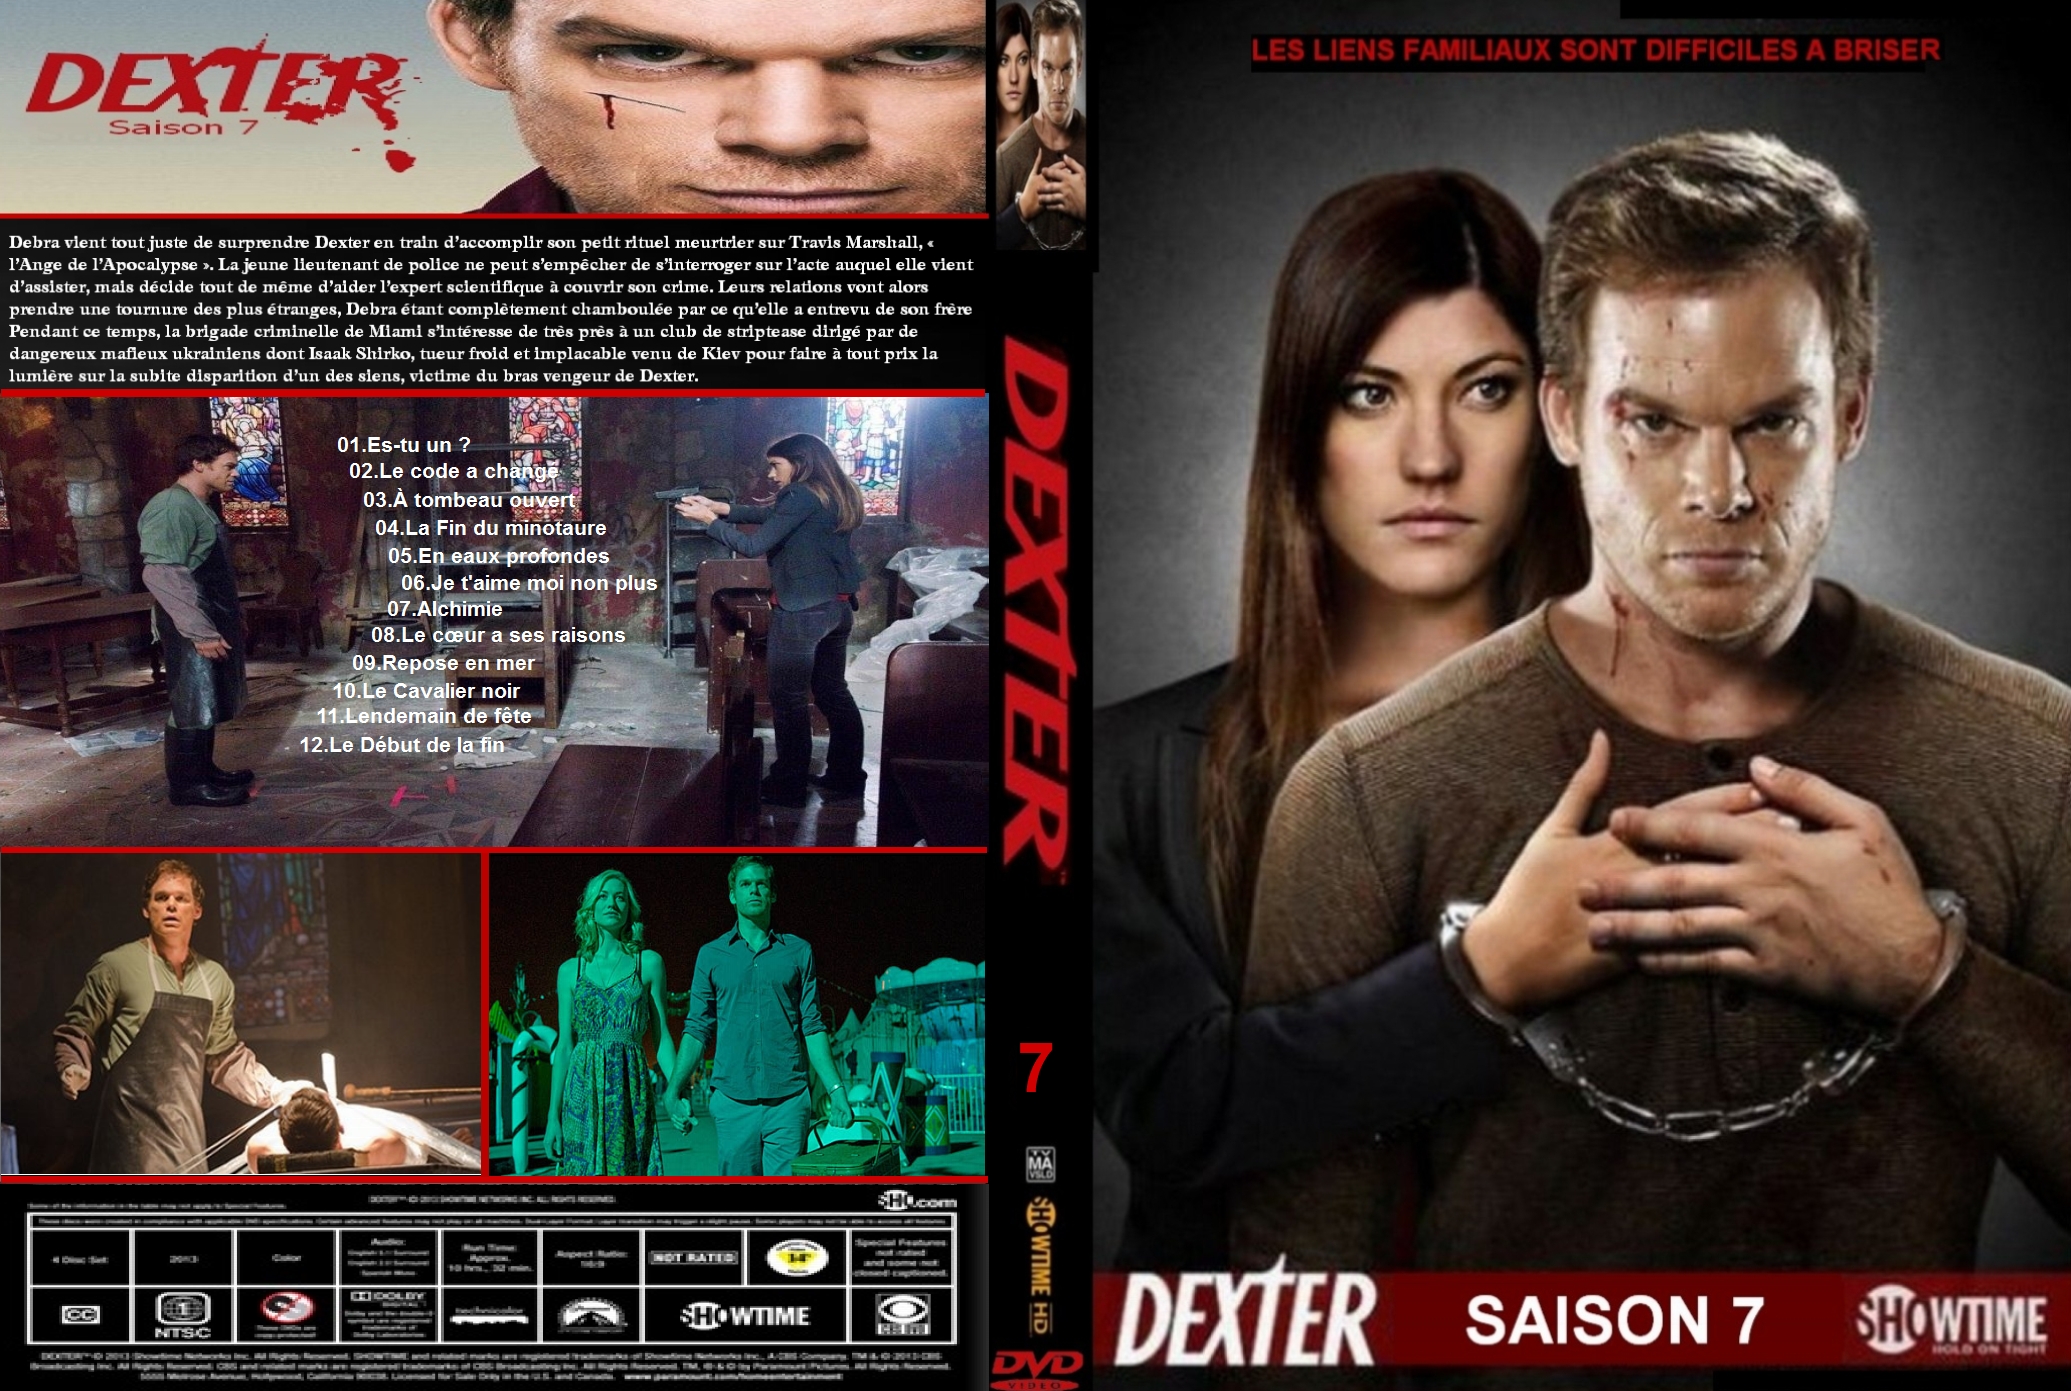 Jaquette DVD Dexter saison 7 custom